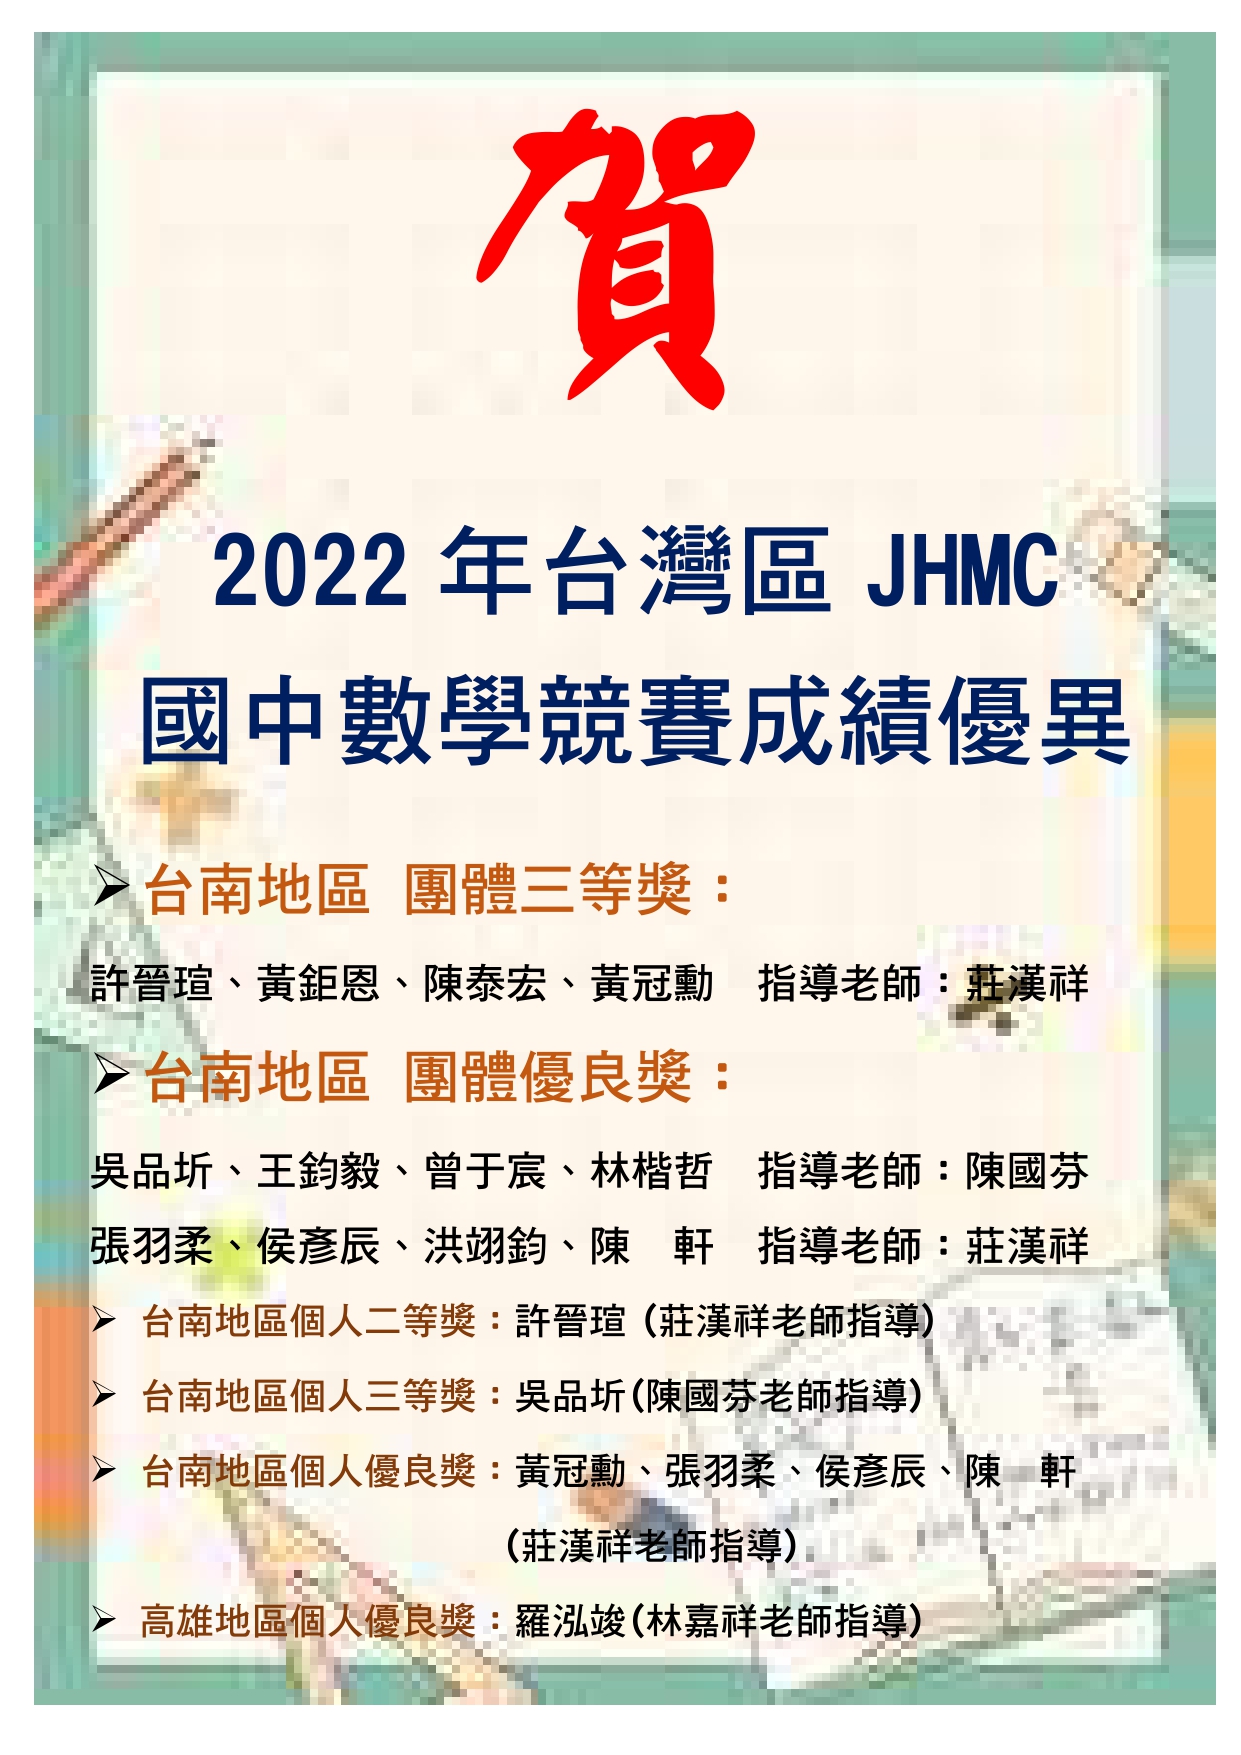 賀~2022年JHMC國中數學競賽成績優異!代表照片